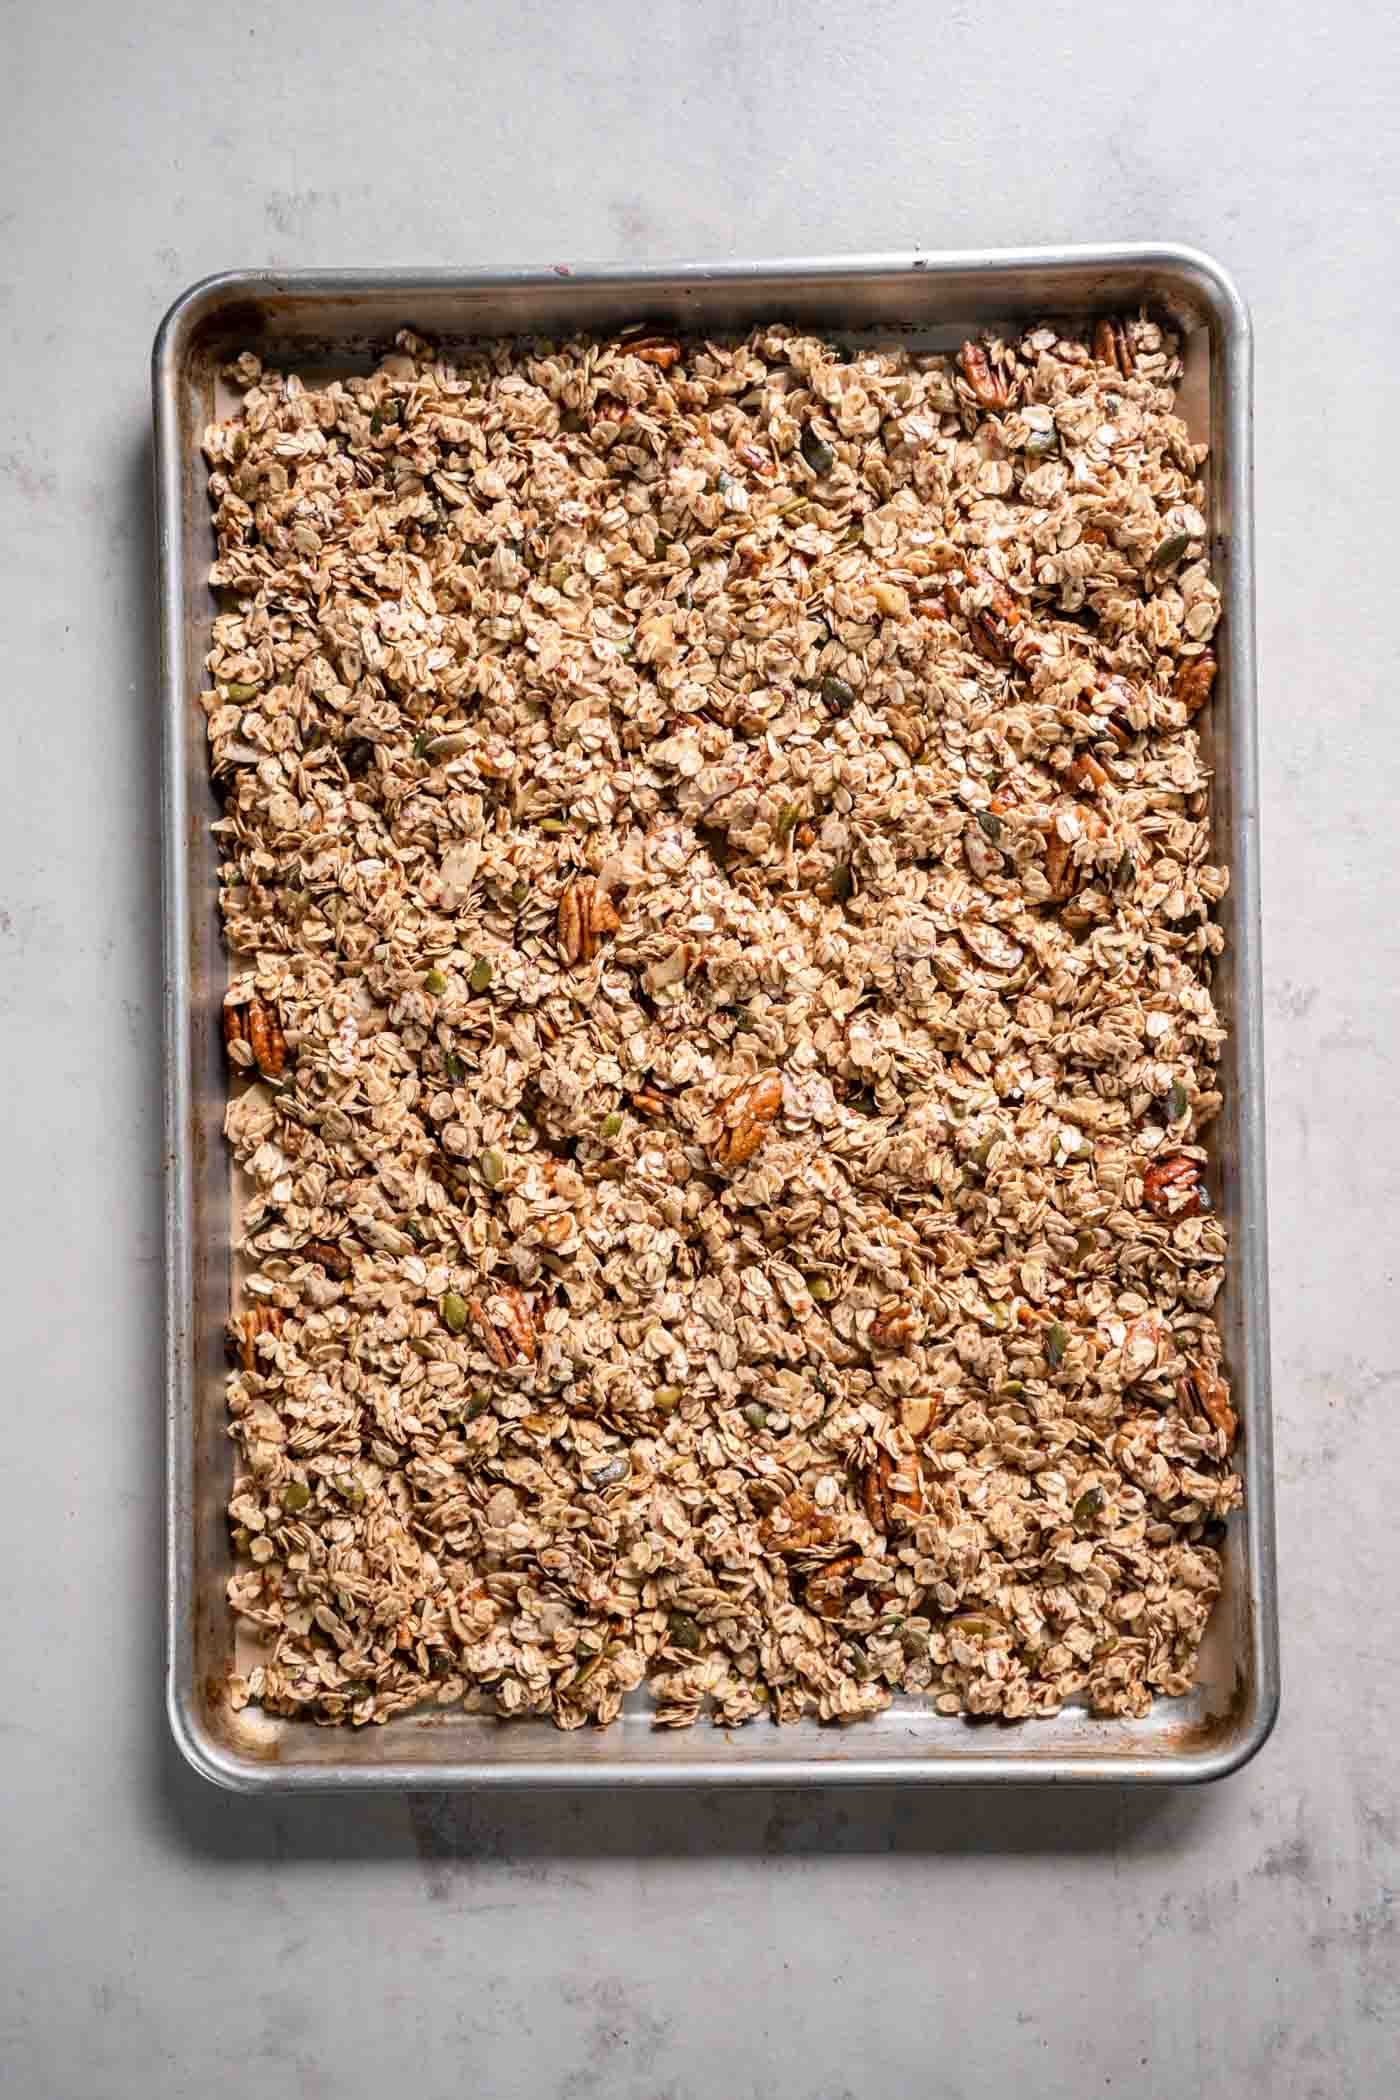 Unbaked granola on baking sheet.